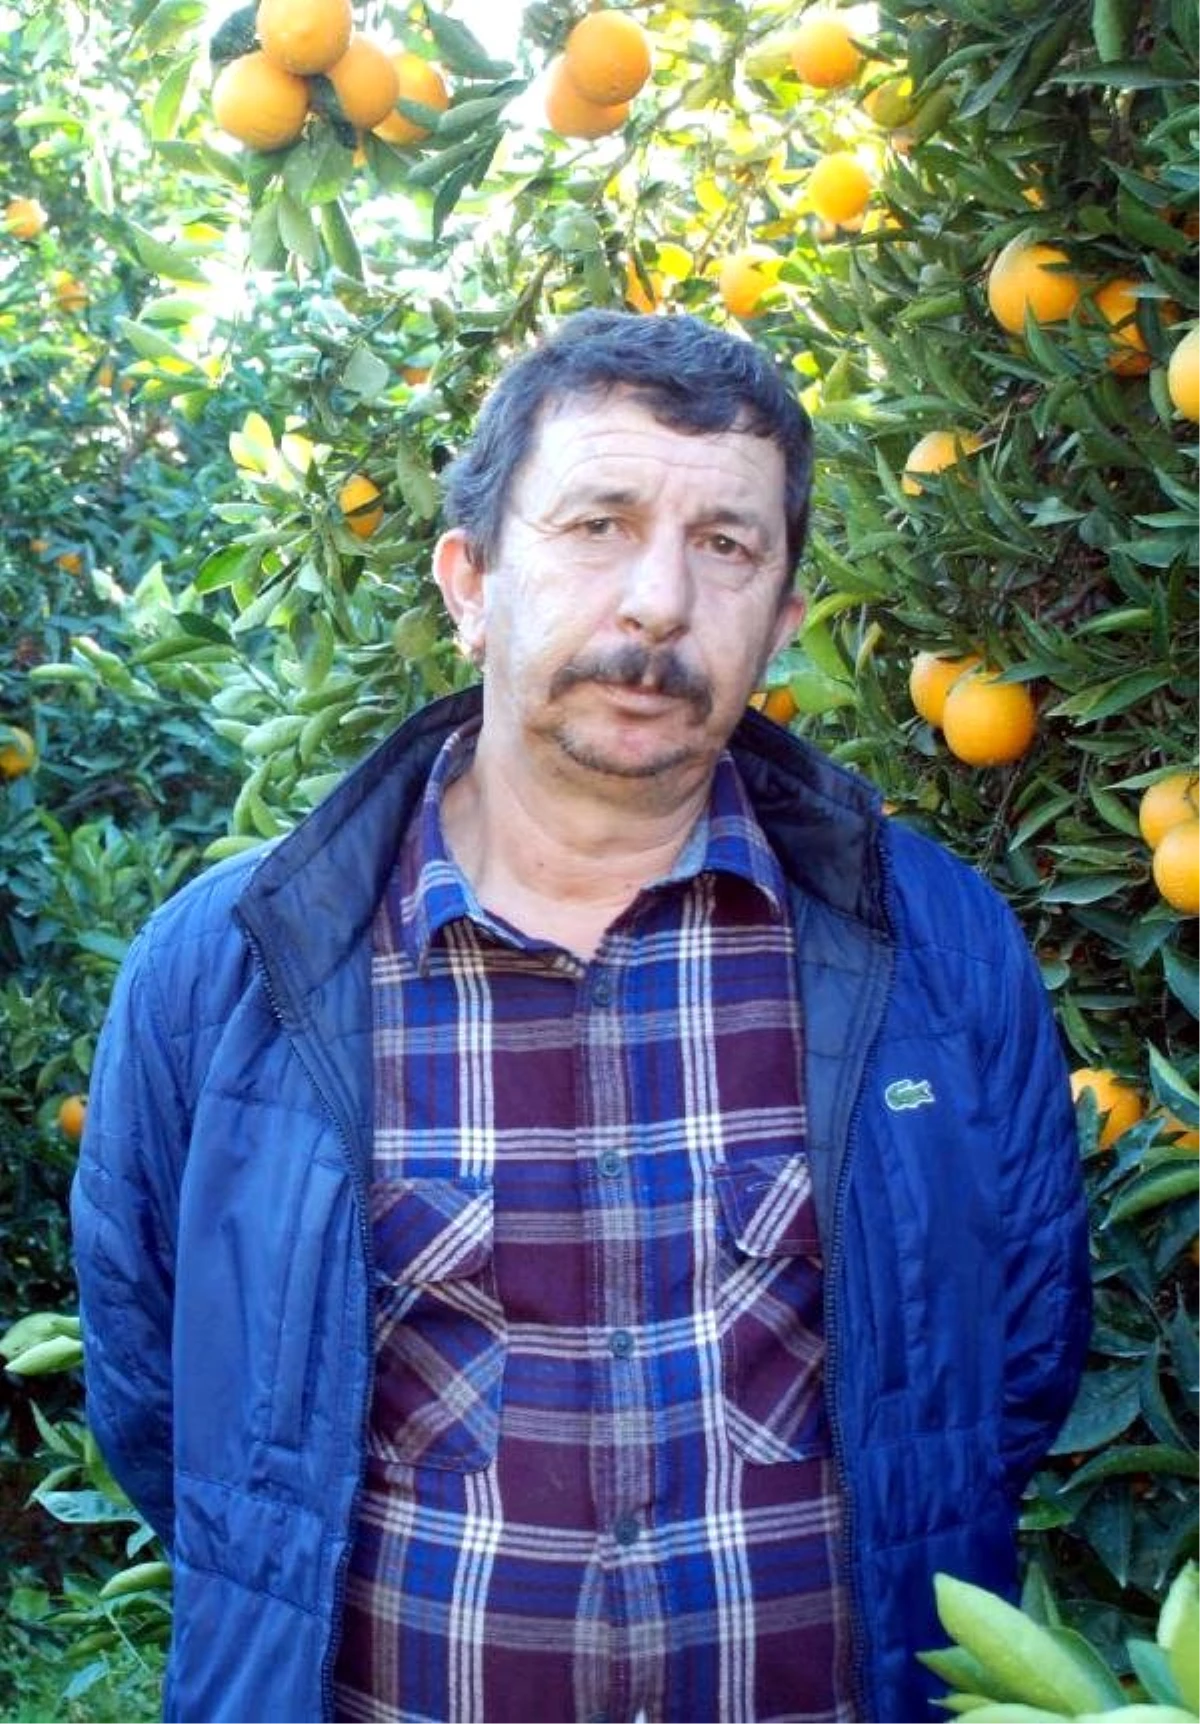 Portakal Üreticisi Tedirgin